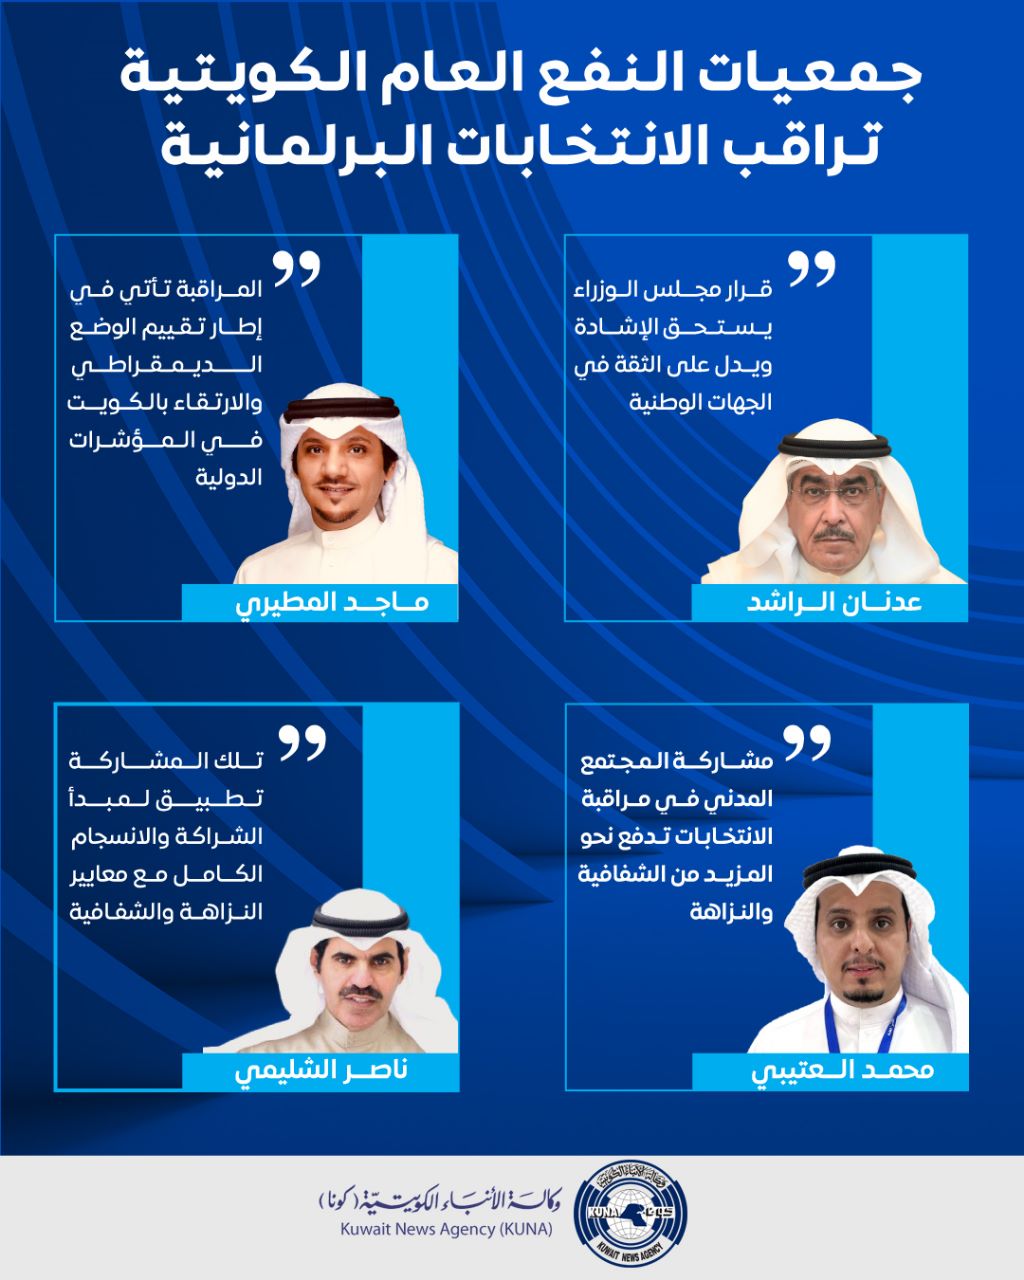 جمعيات النفع العام الكويتية.. شريك رئيسي في مراقبة الانتخابات البرلمانية انطلاقا من دورها الوطني